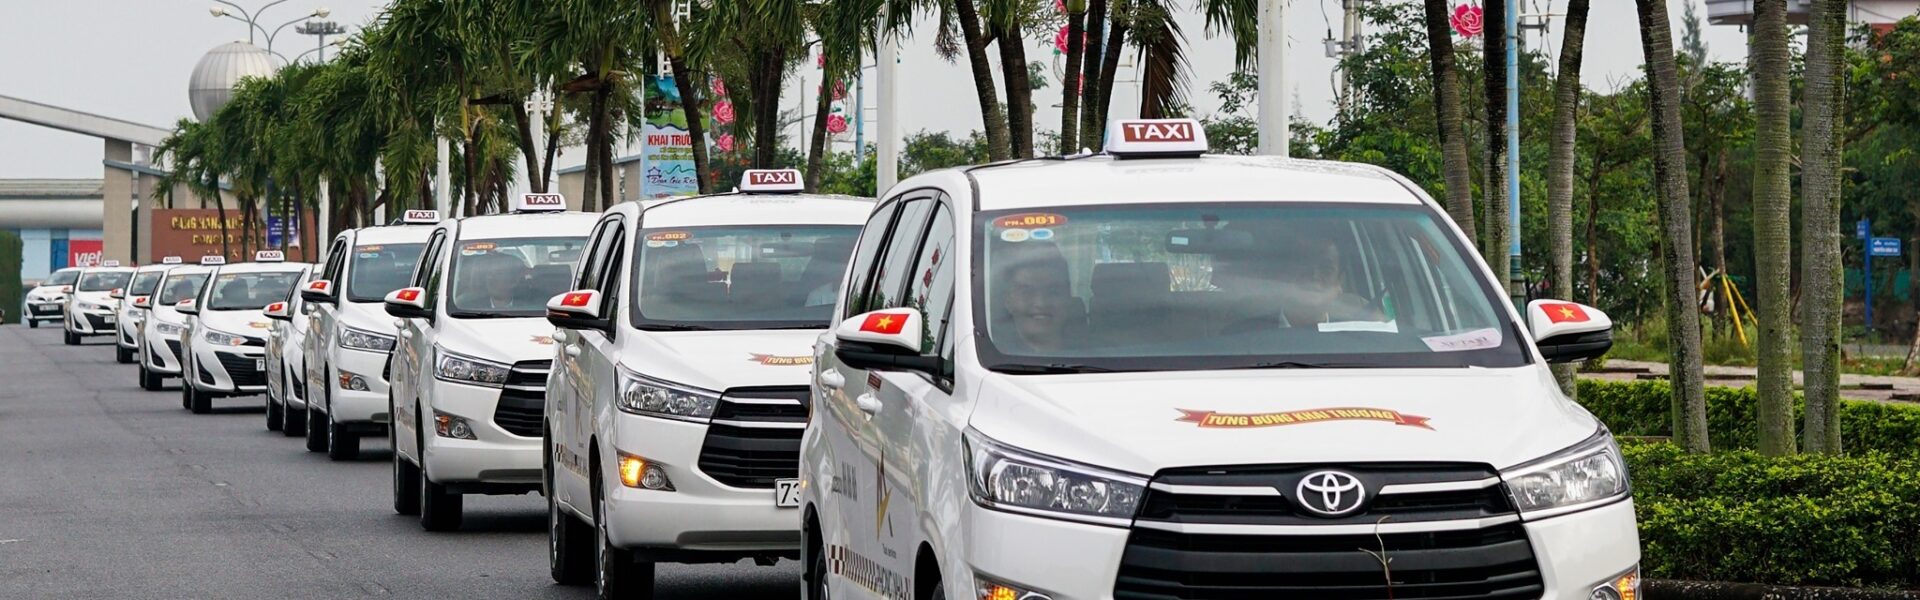 Top 20 hãng taxi Bình Thuận giá cả hợp lý dành cho du khách - Ảnh đại diện